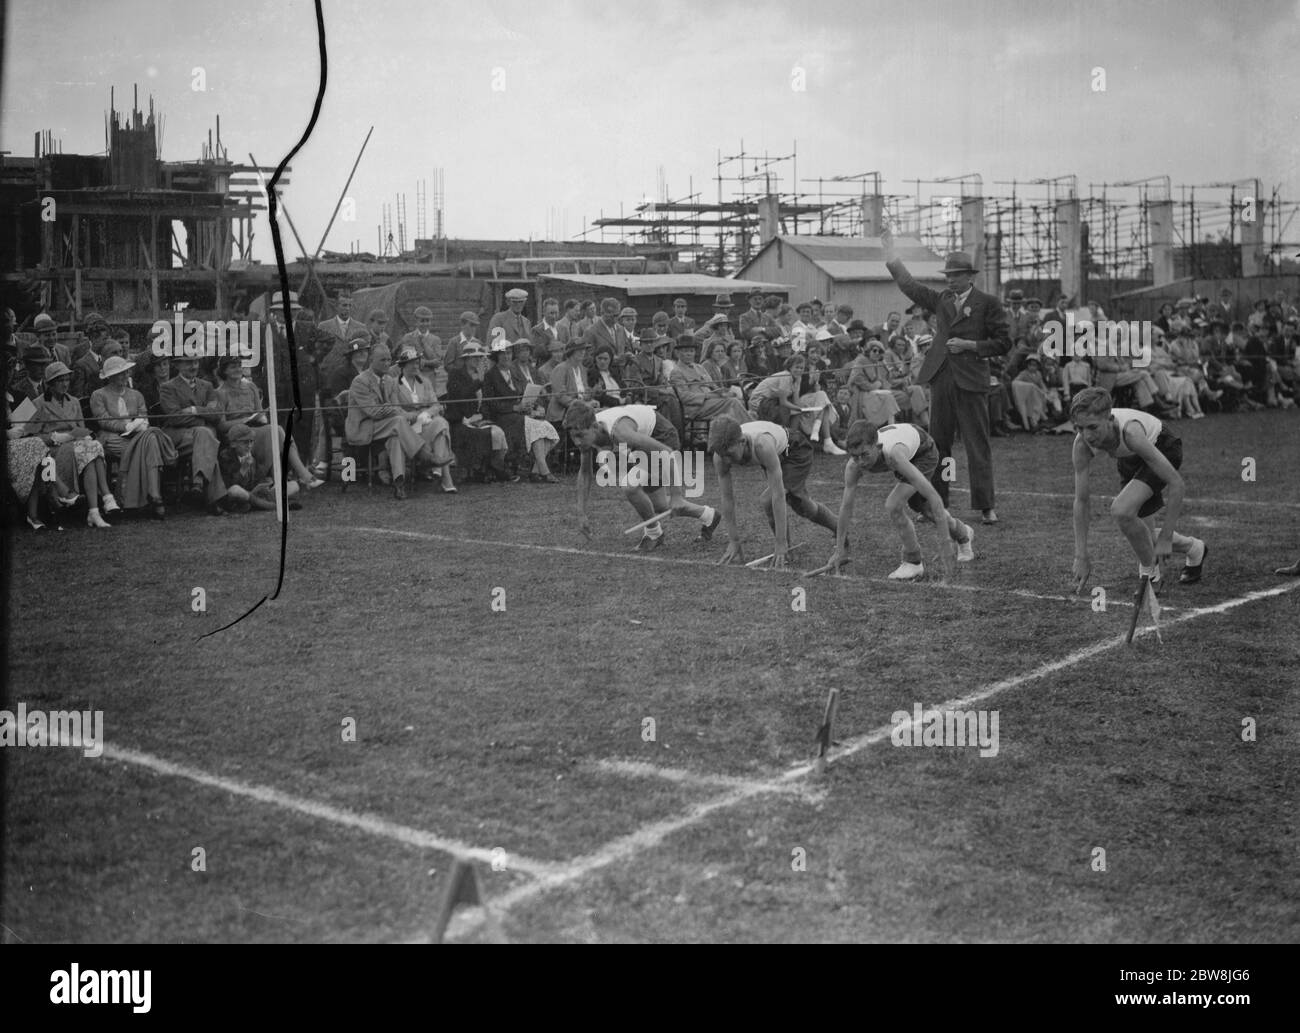 Sidcup County School garçons sports. Le début d'une course . 24 juillet 1937 Banque D'Images